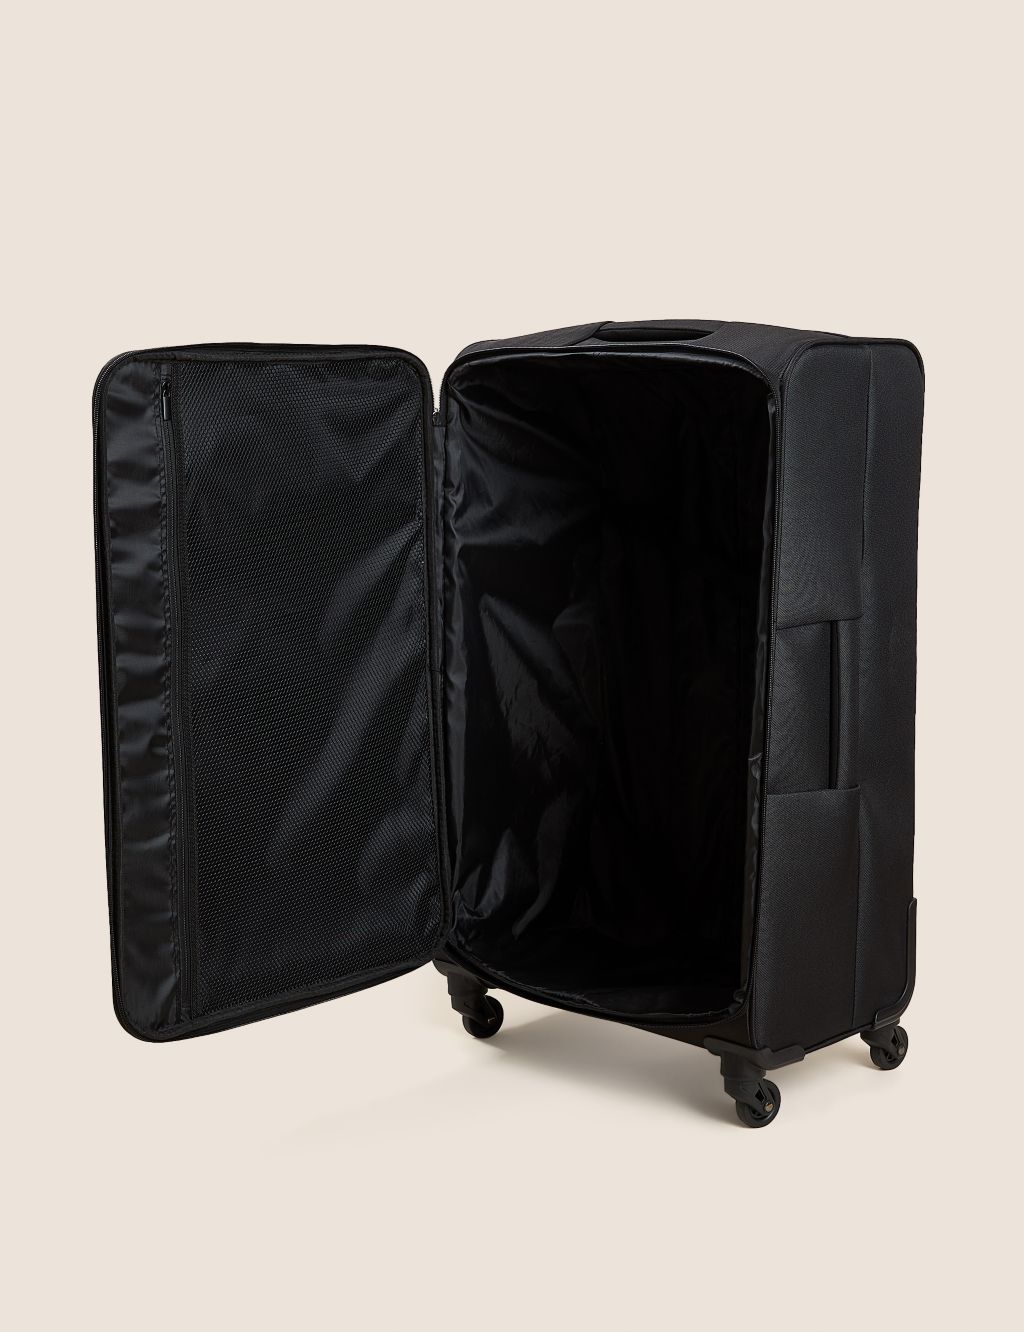 Palma 4 Wheel Soft Large Suitcase image 6